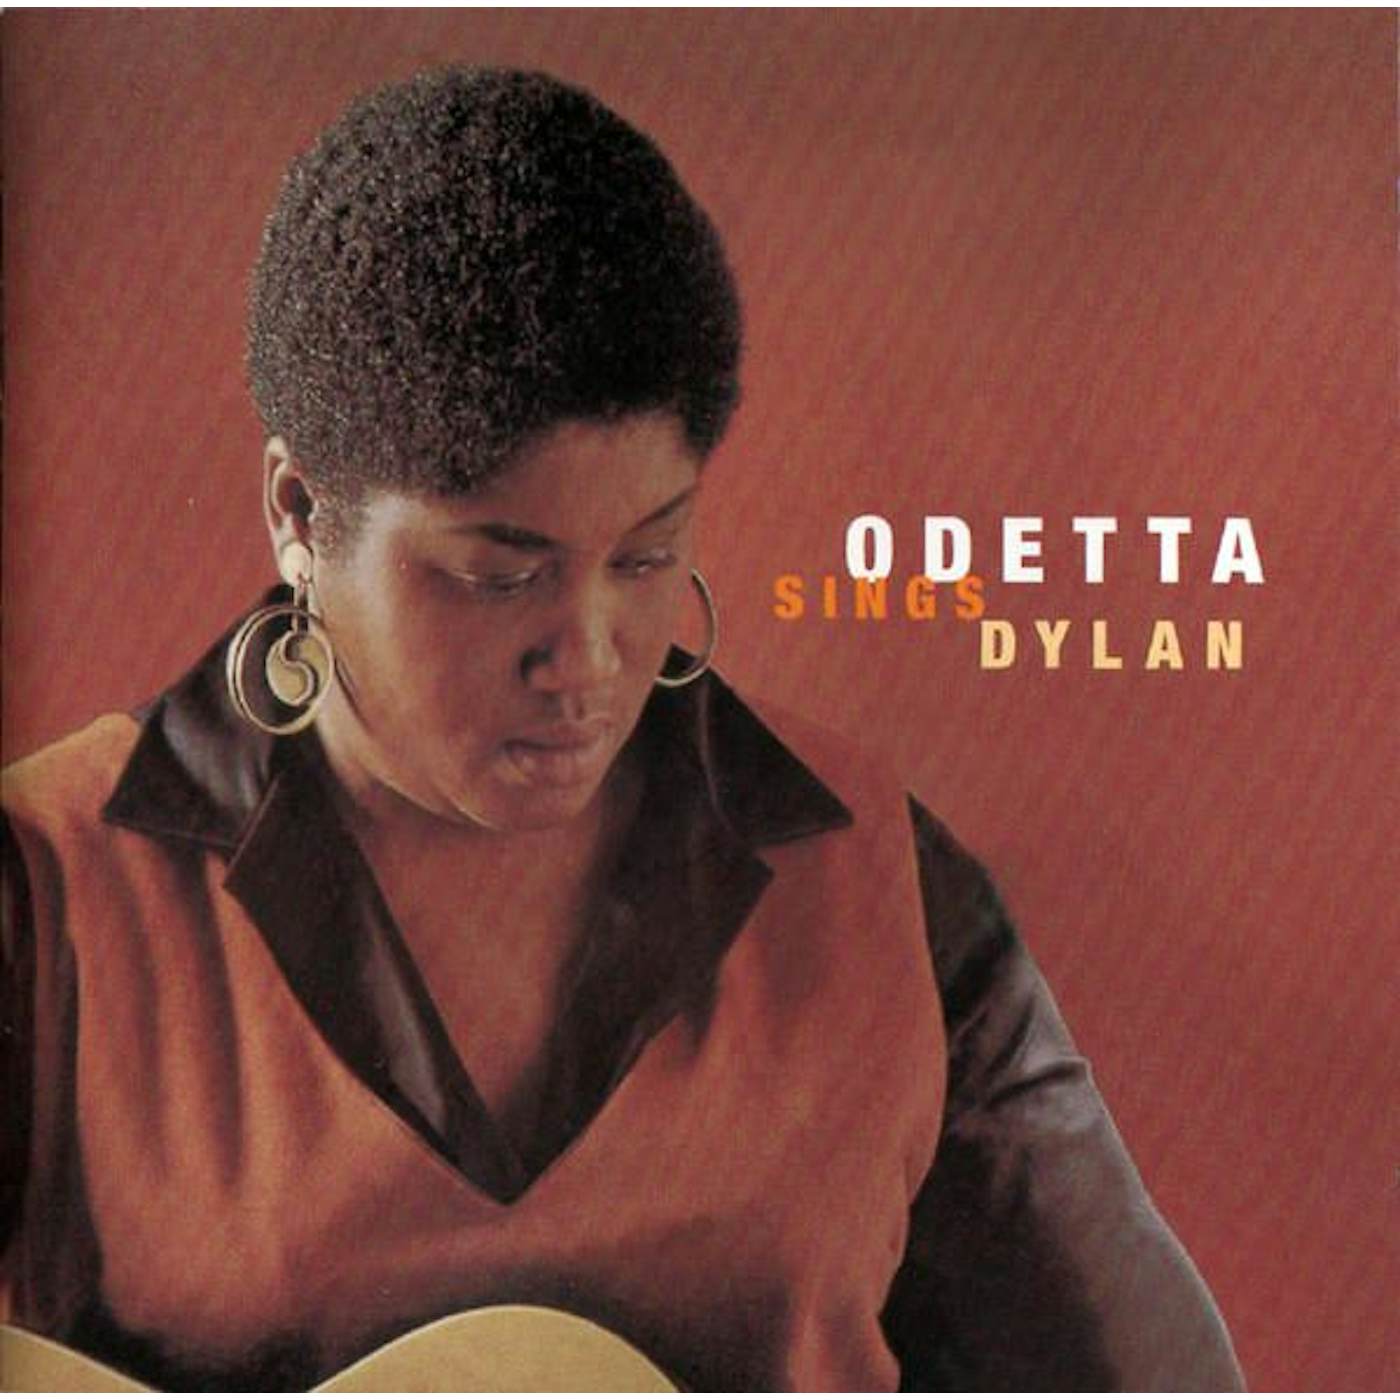 ODETTA SINGS DYLAN CD